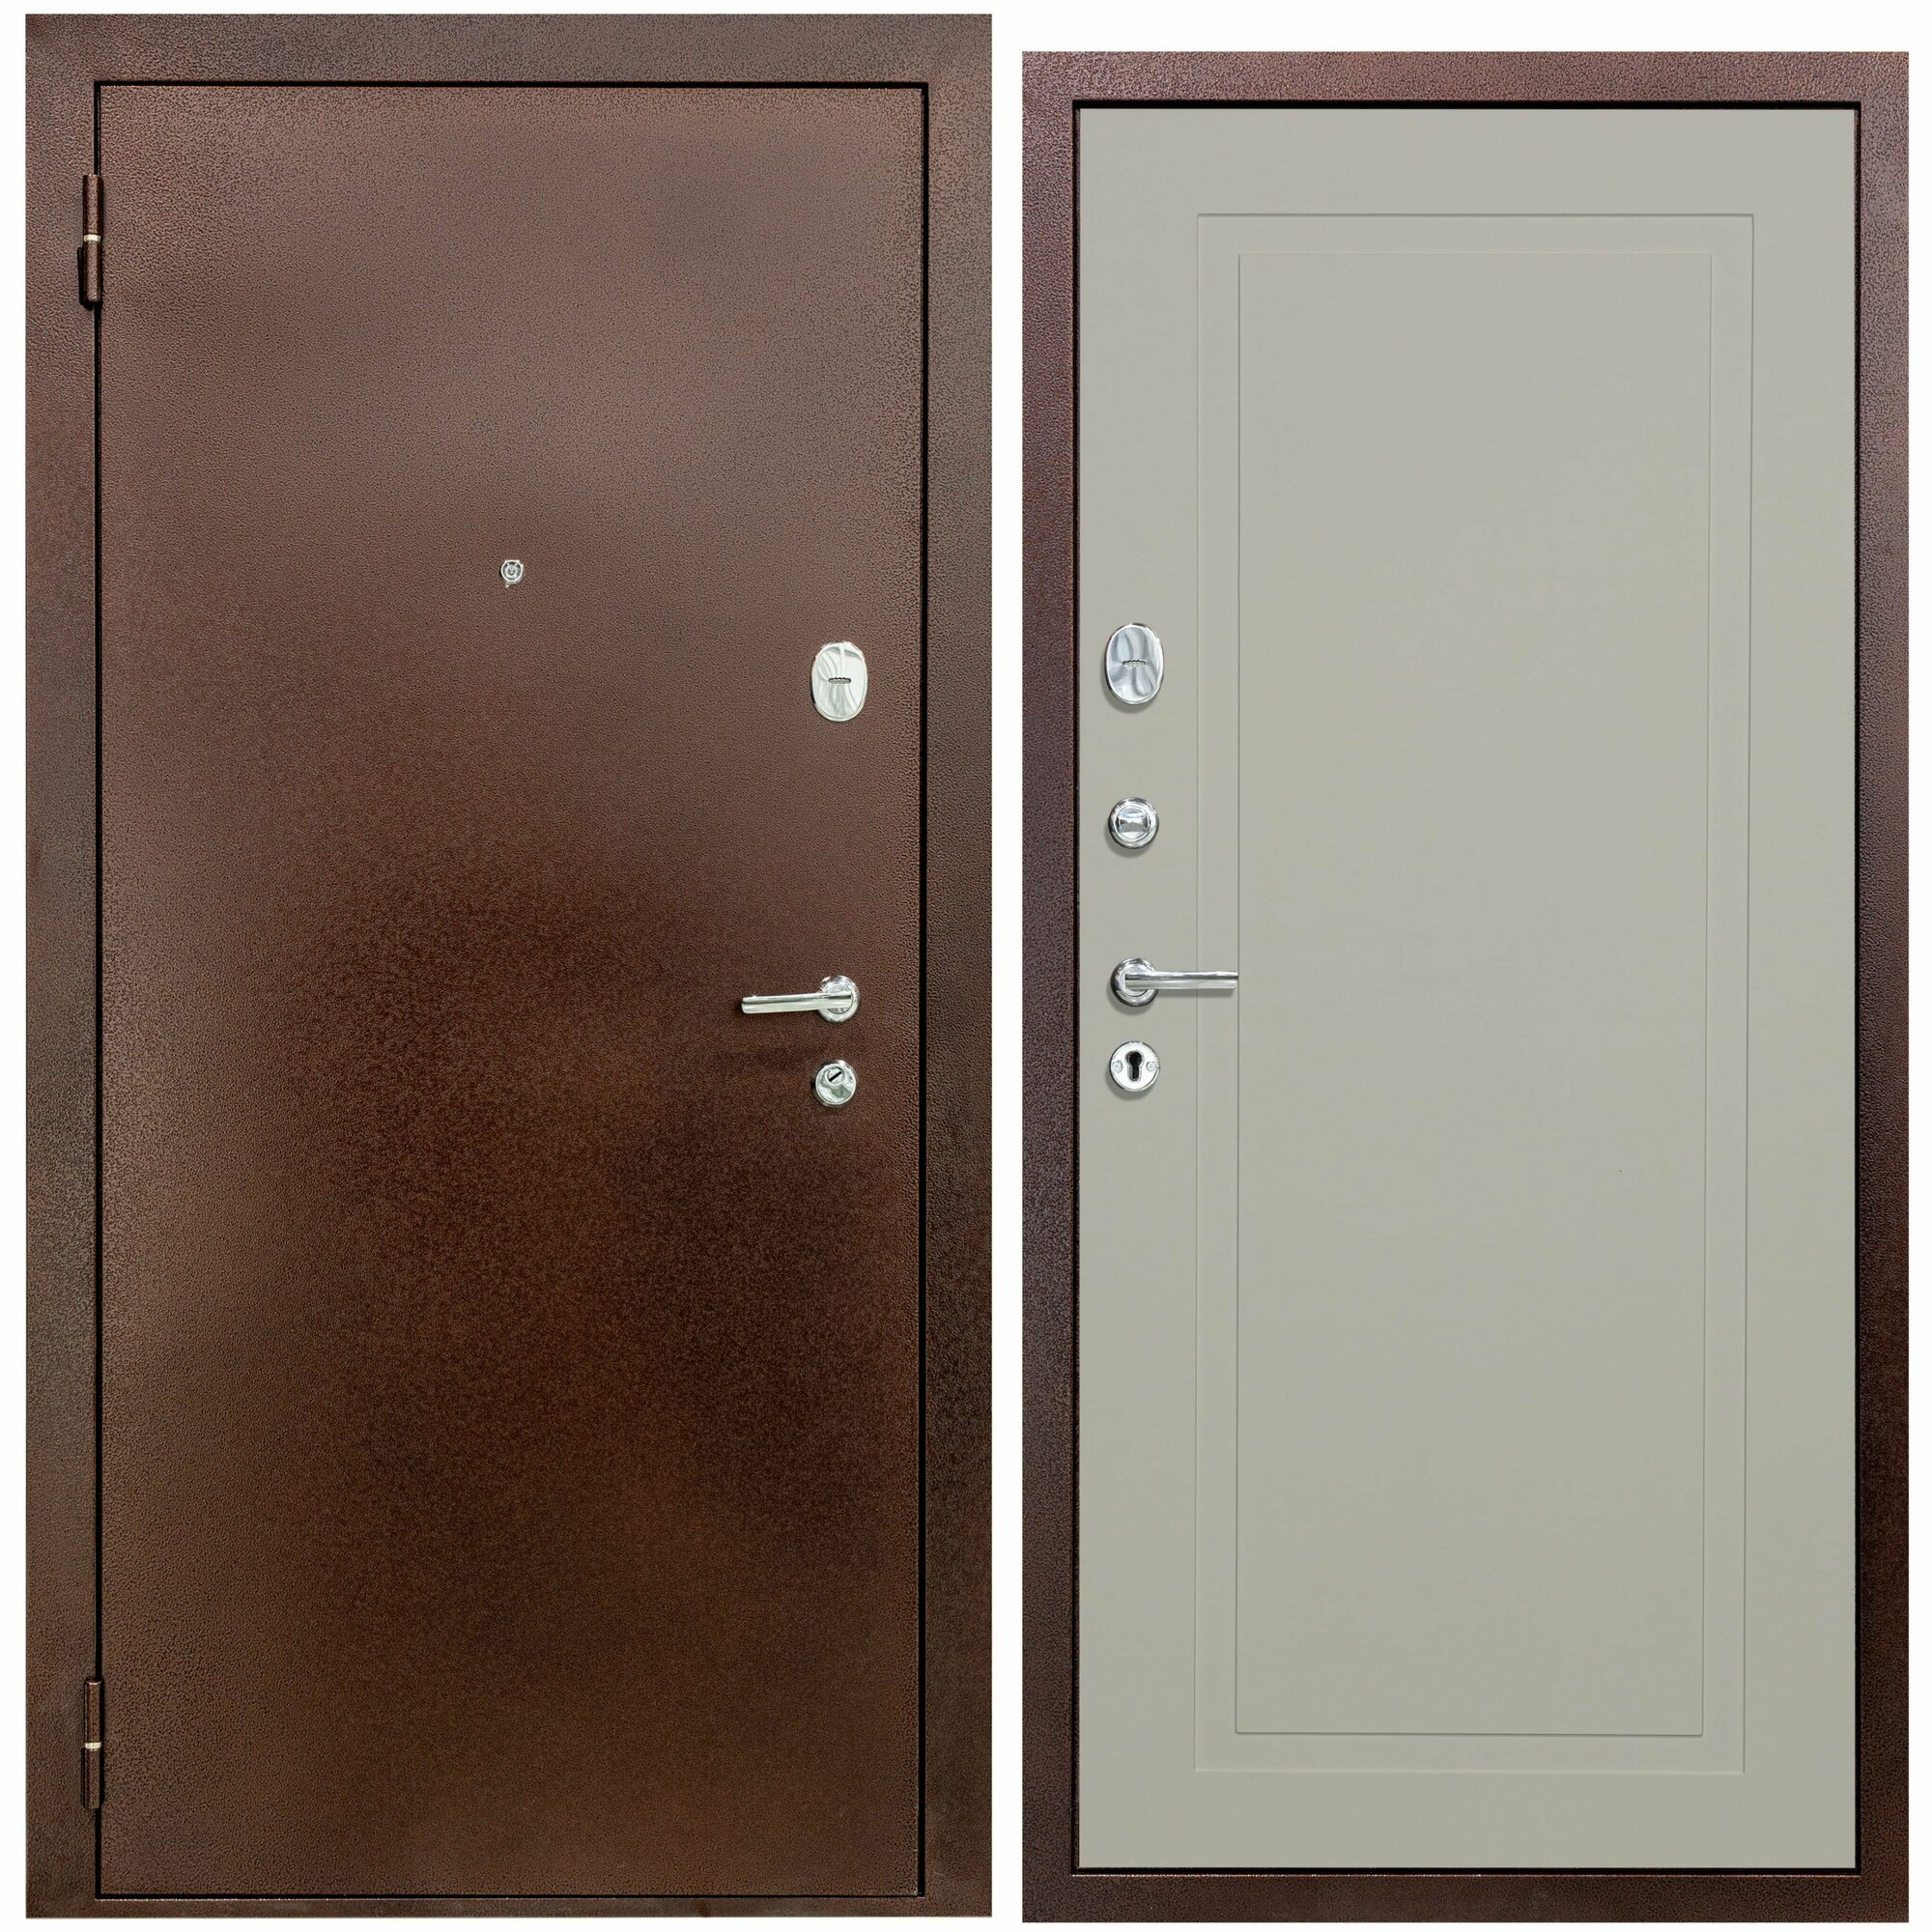 Дверь входная металлическая DIVA 510 2050х860 Левая Антик медь - Н10 Софт шампань, тепло-шумоизоляция, антикоррозийная защита для квартиры и дома